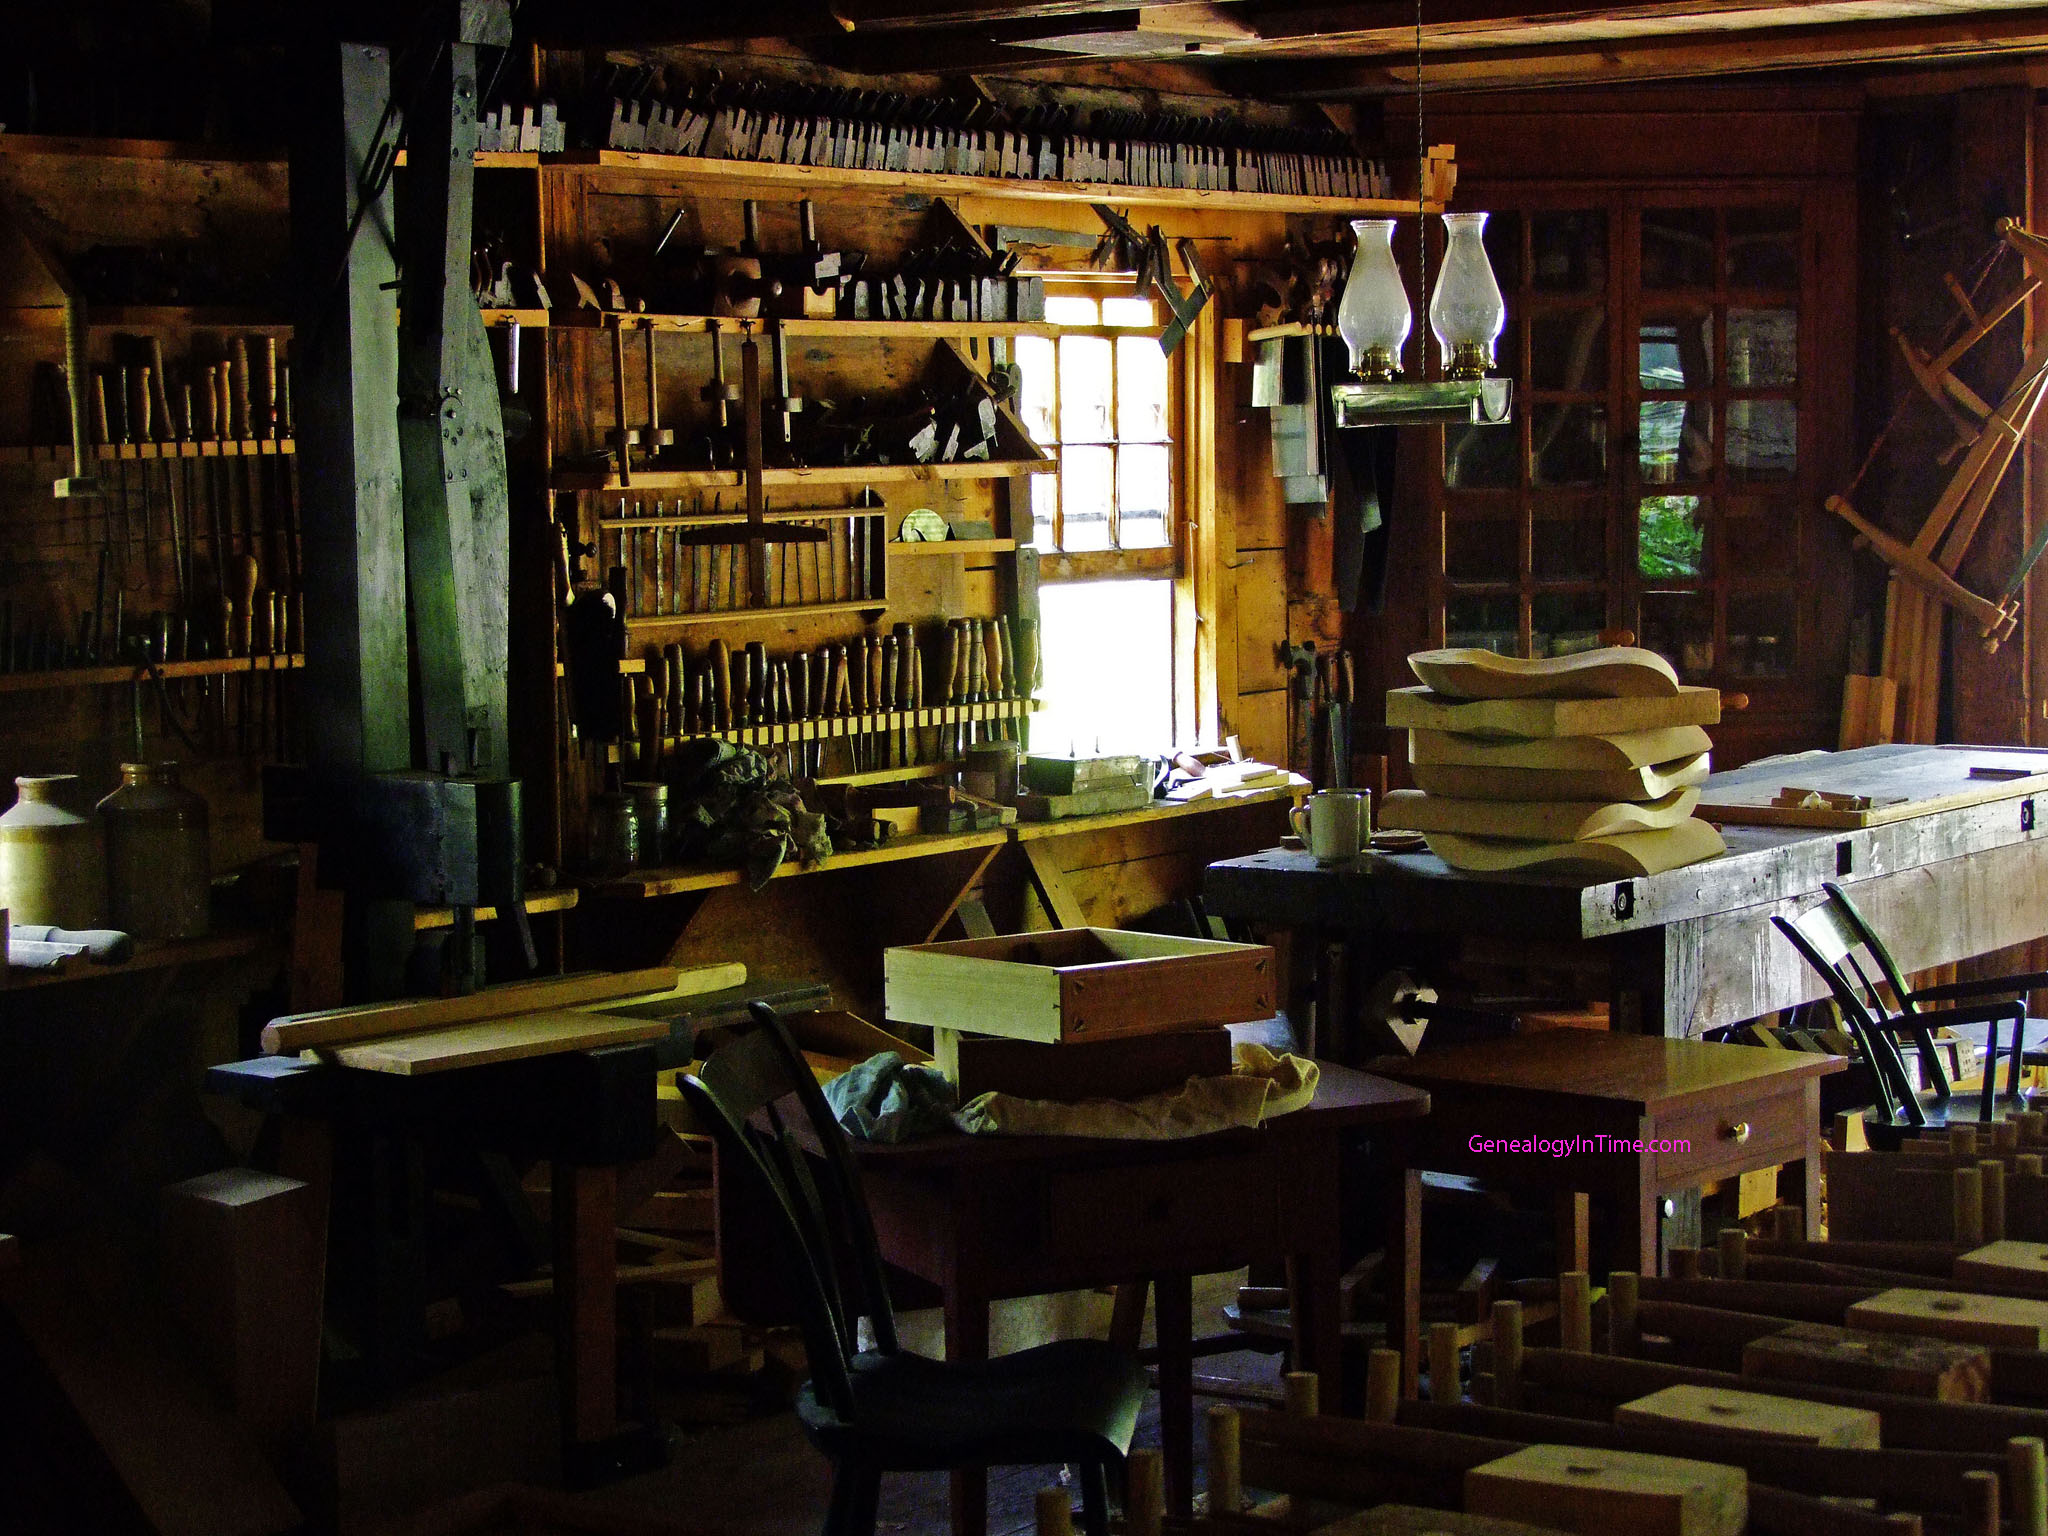 Với những công cụ cổ trong cửa hàng gỗ cũ, bạn như được mở ra một kho tàng của những kỷ vật đẹp và lịch sử. Hãy đến và khám phá những chi tiết thú vị trên những món đồ độc đáo này.